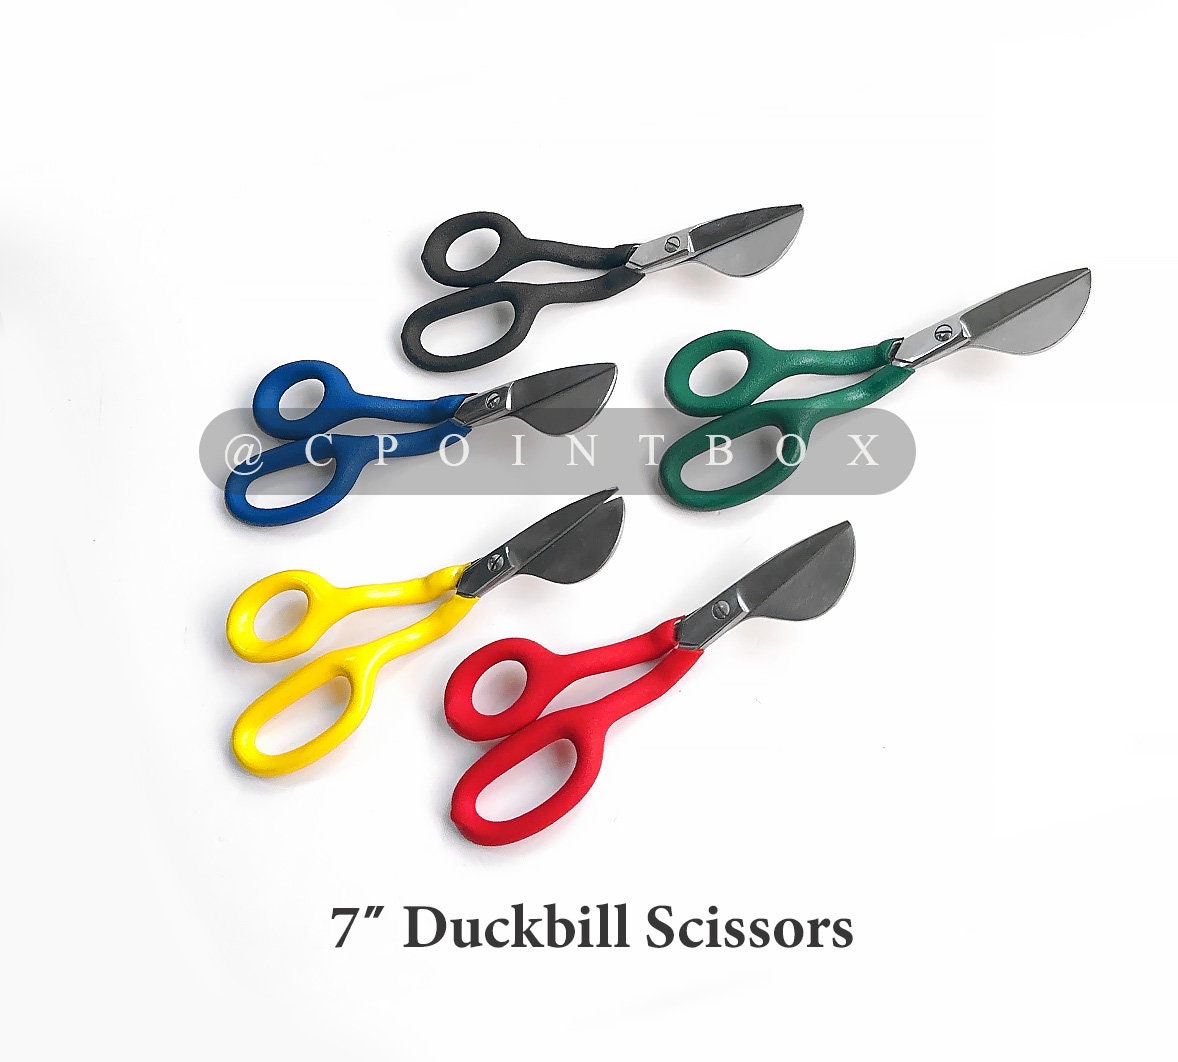 What Are Duckbill Scissors? 